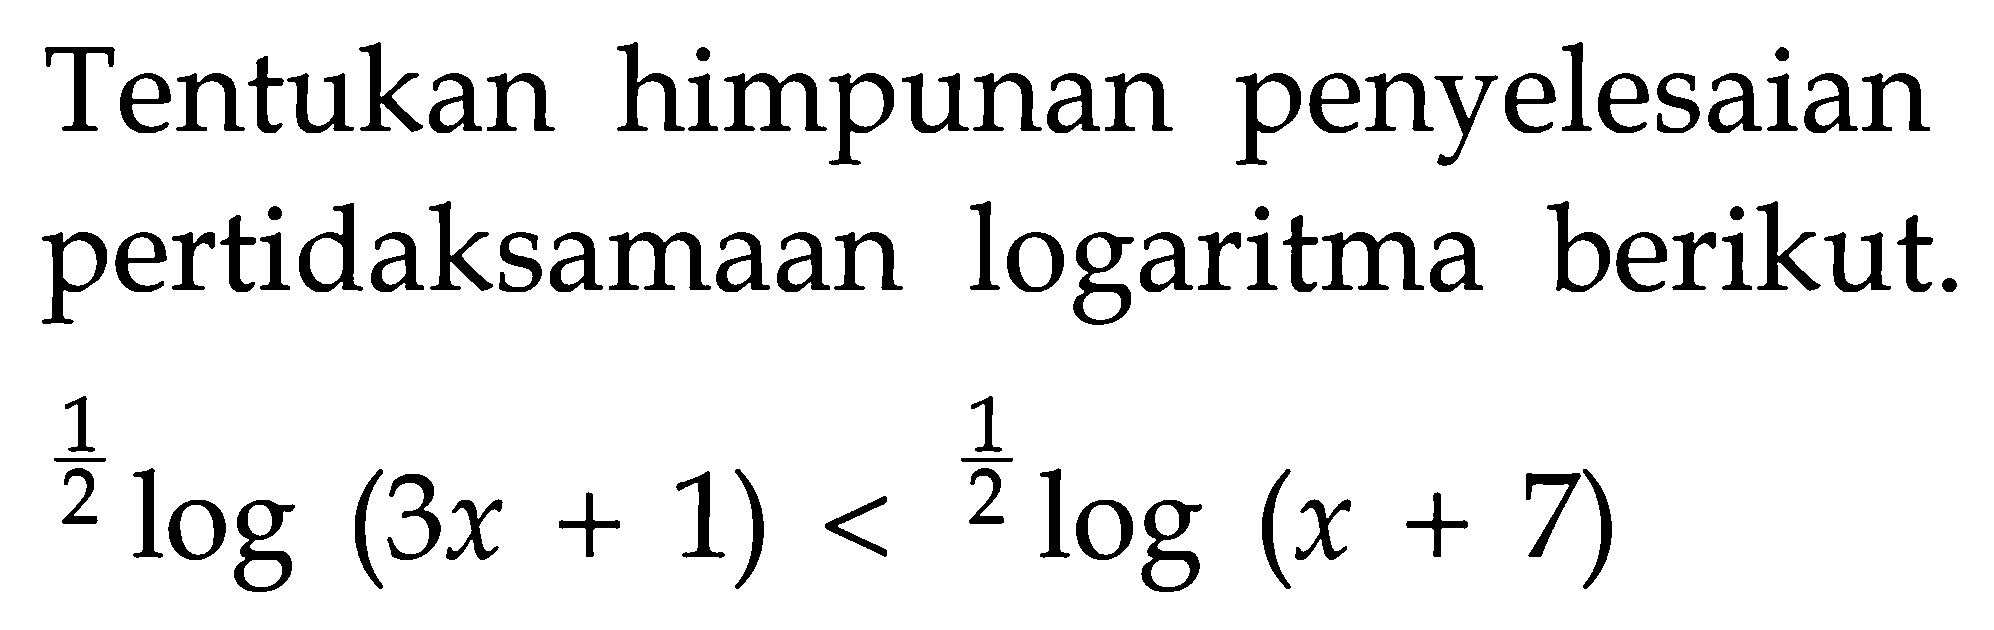 Tentukan himpunan penyelesaian pertidaksamaan logaritma berikut. (1/2)log(3x+1)<(1/2)log(x+7)